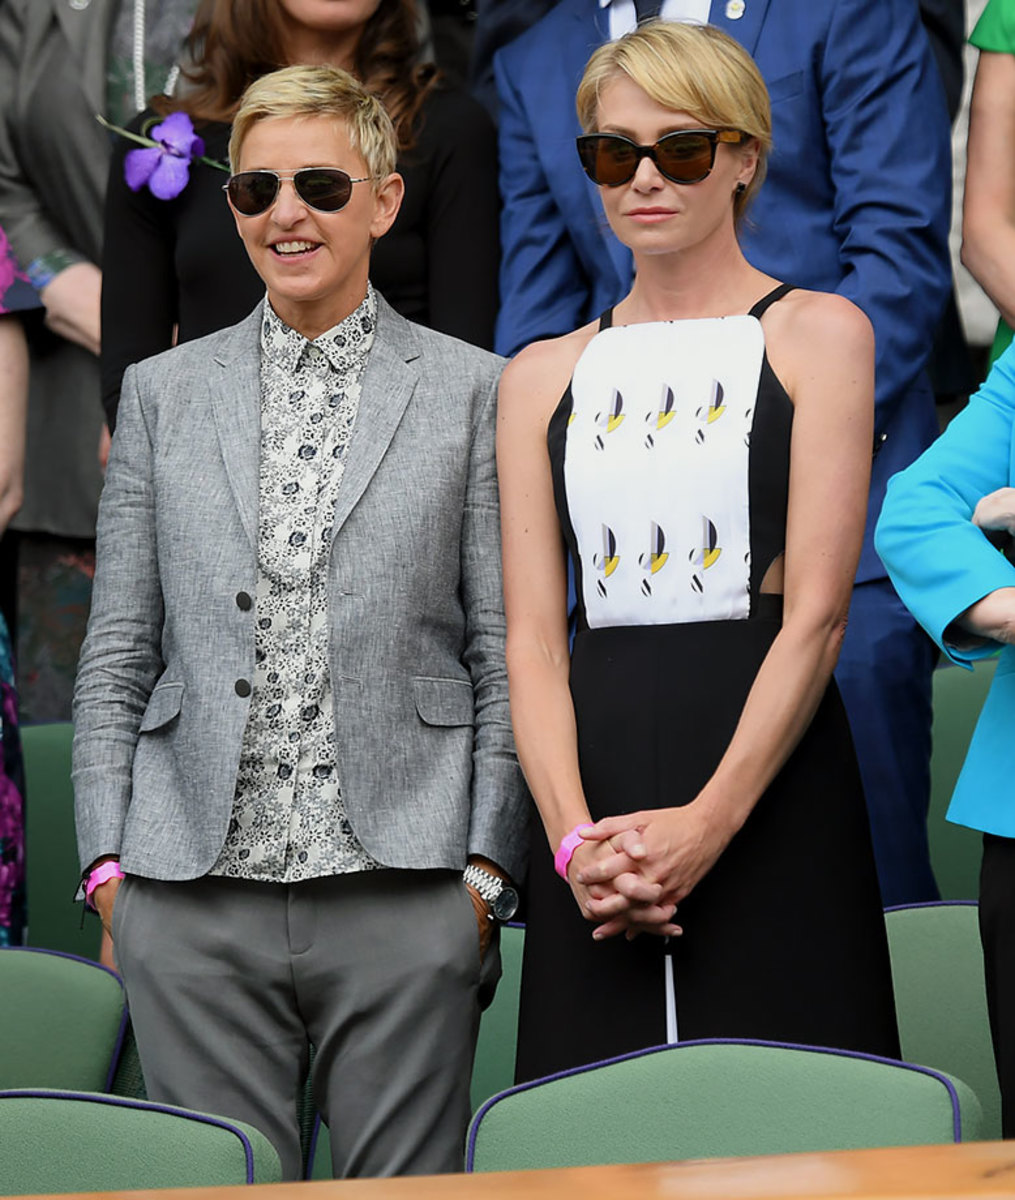 2016-0709-Ellen-DeGeneres-Portia-de-Rossi.jpg